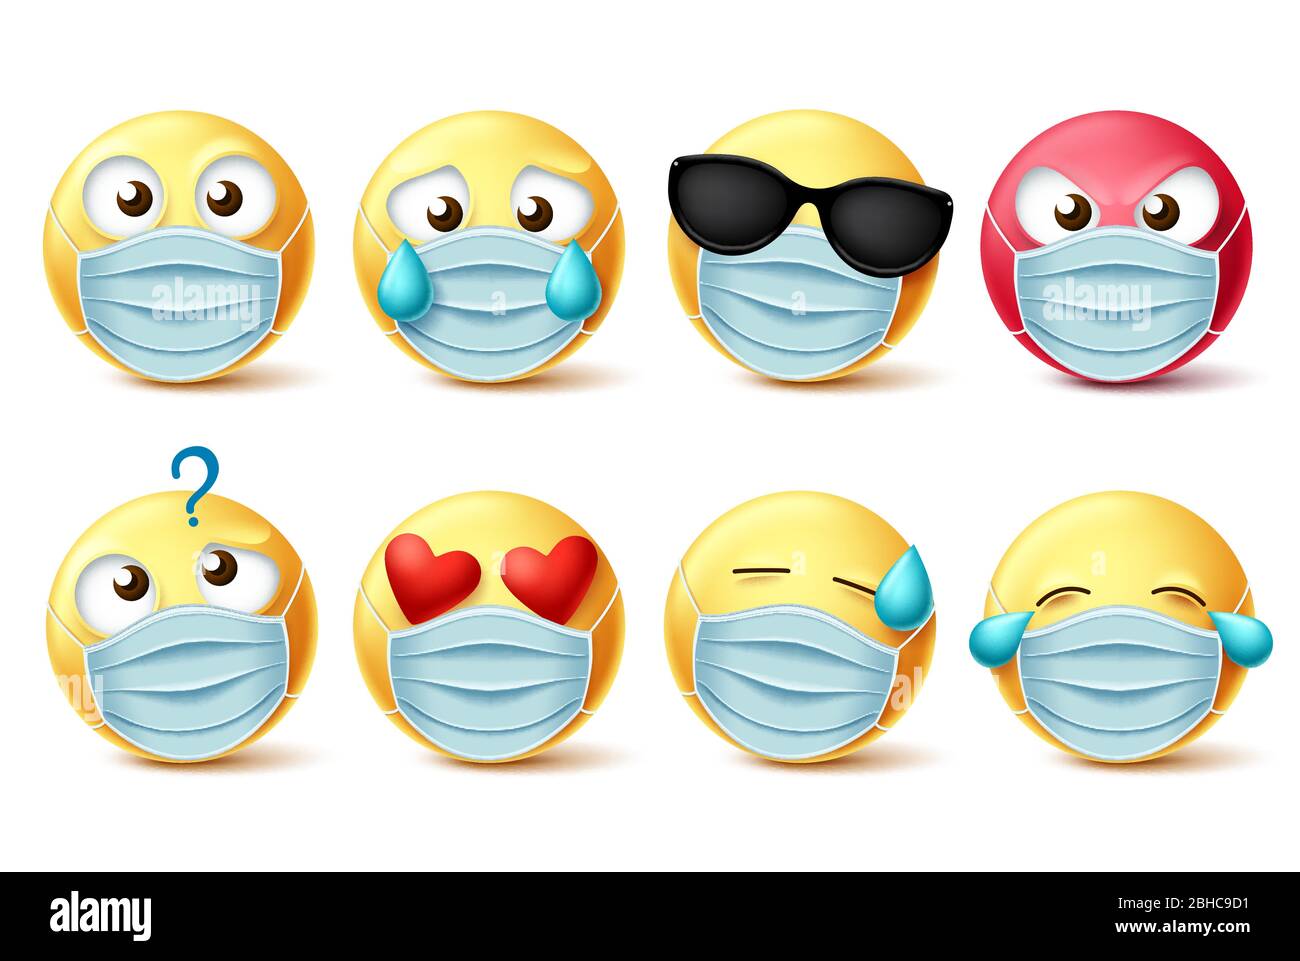 Emoticons Gesichtsmaske Vektor Emojis gesetzt. Emojis und Covid-19 Emoticons mit Gesichtsmaske und Gesichtsausdrücke isoliert in weiß für Covid-19 Corona Virus Stock Vektor